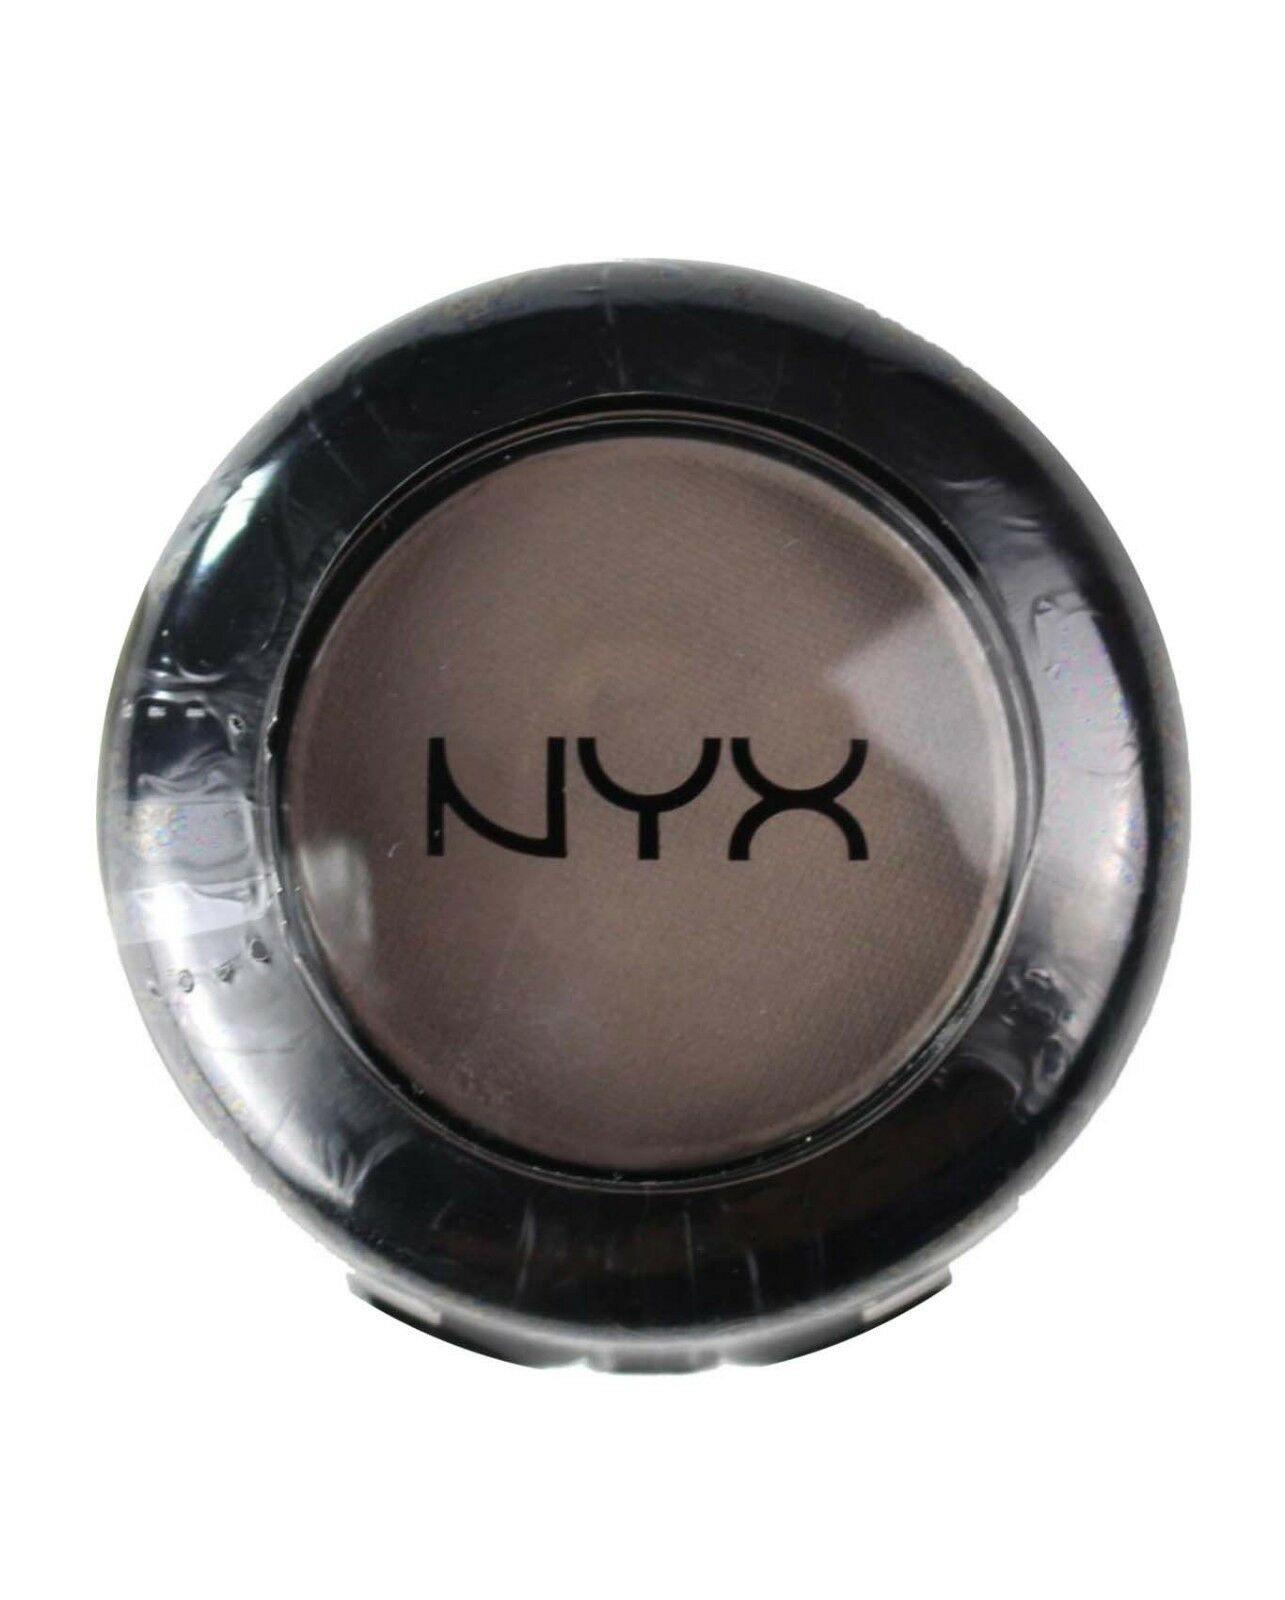 NYX Professional Make Up NYX Nude Matte Eyeshadow 1.5g Haywire 19 - www.indiancart.com.au - Eyeshadow - NYX - NYX